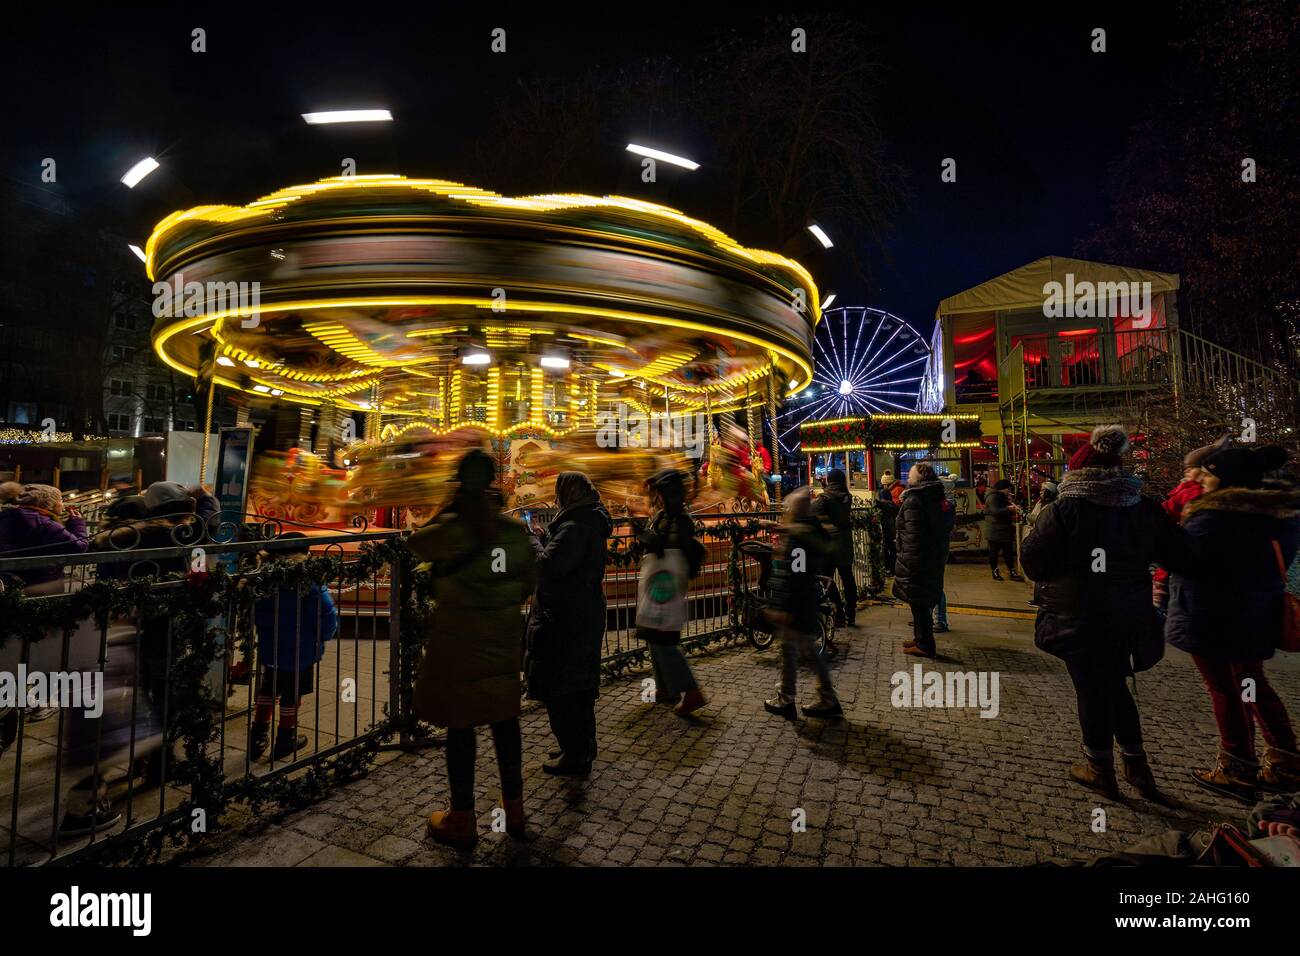 Oslo, Norwegen - Merry-go-round Fahrt mit Riesenrad im Hintergrund Stockfoto